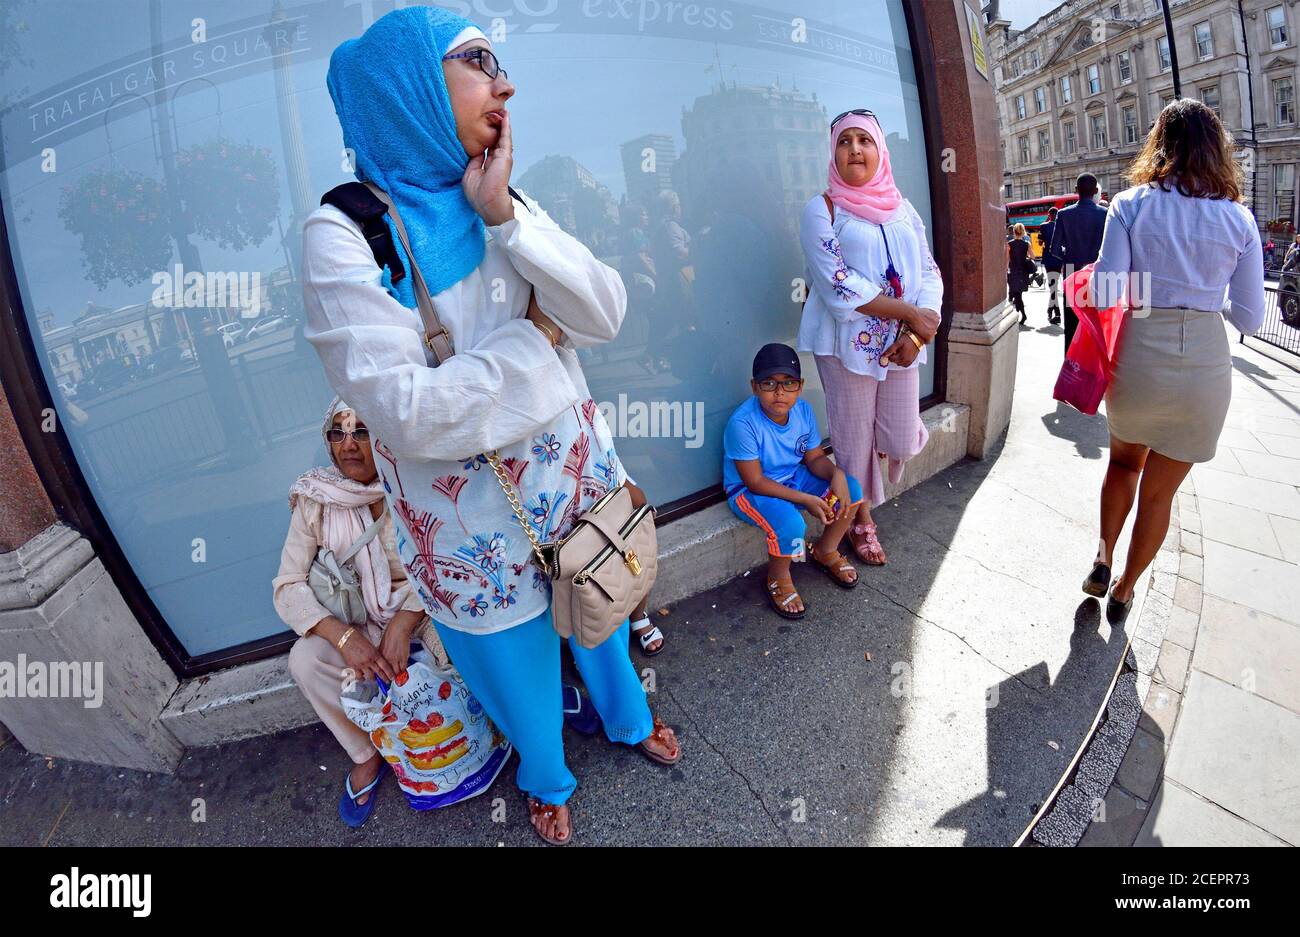 Londres, Angleterre, Royaume-Uni. Famille musulmane à l'extérieur de la boutique Tesco à Trafalgar Square Banque D'Images